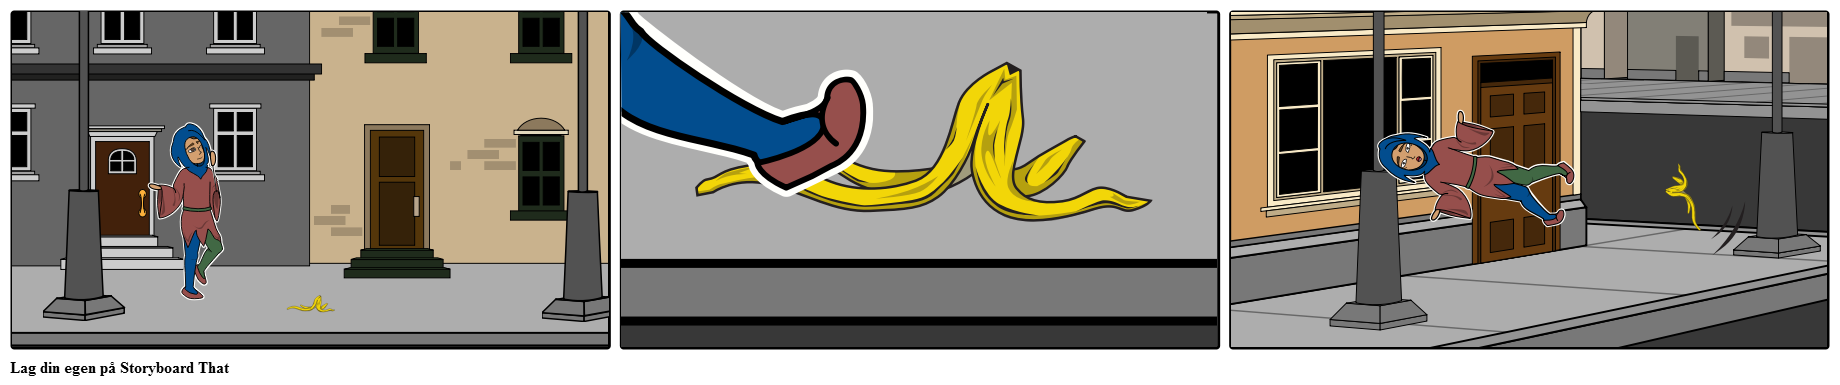 Jester glipper på bananskall